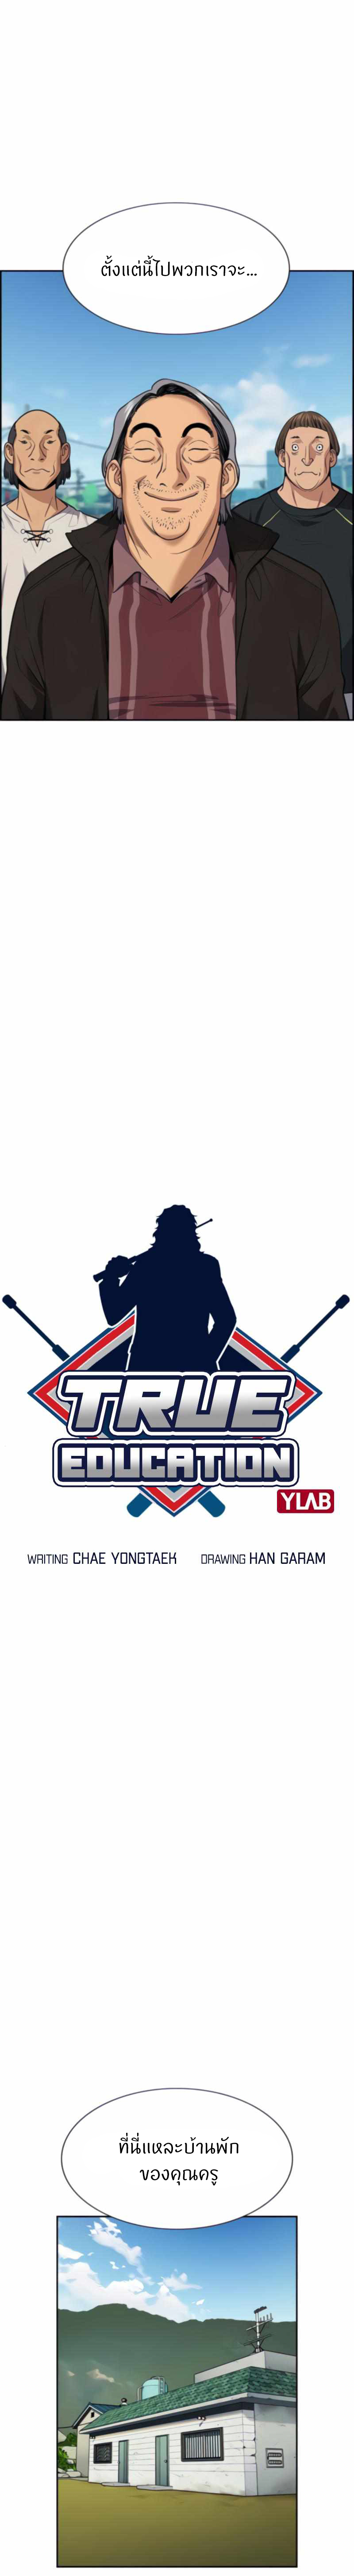 True Education 74 03